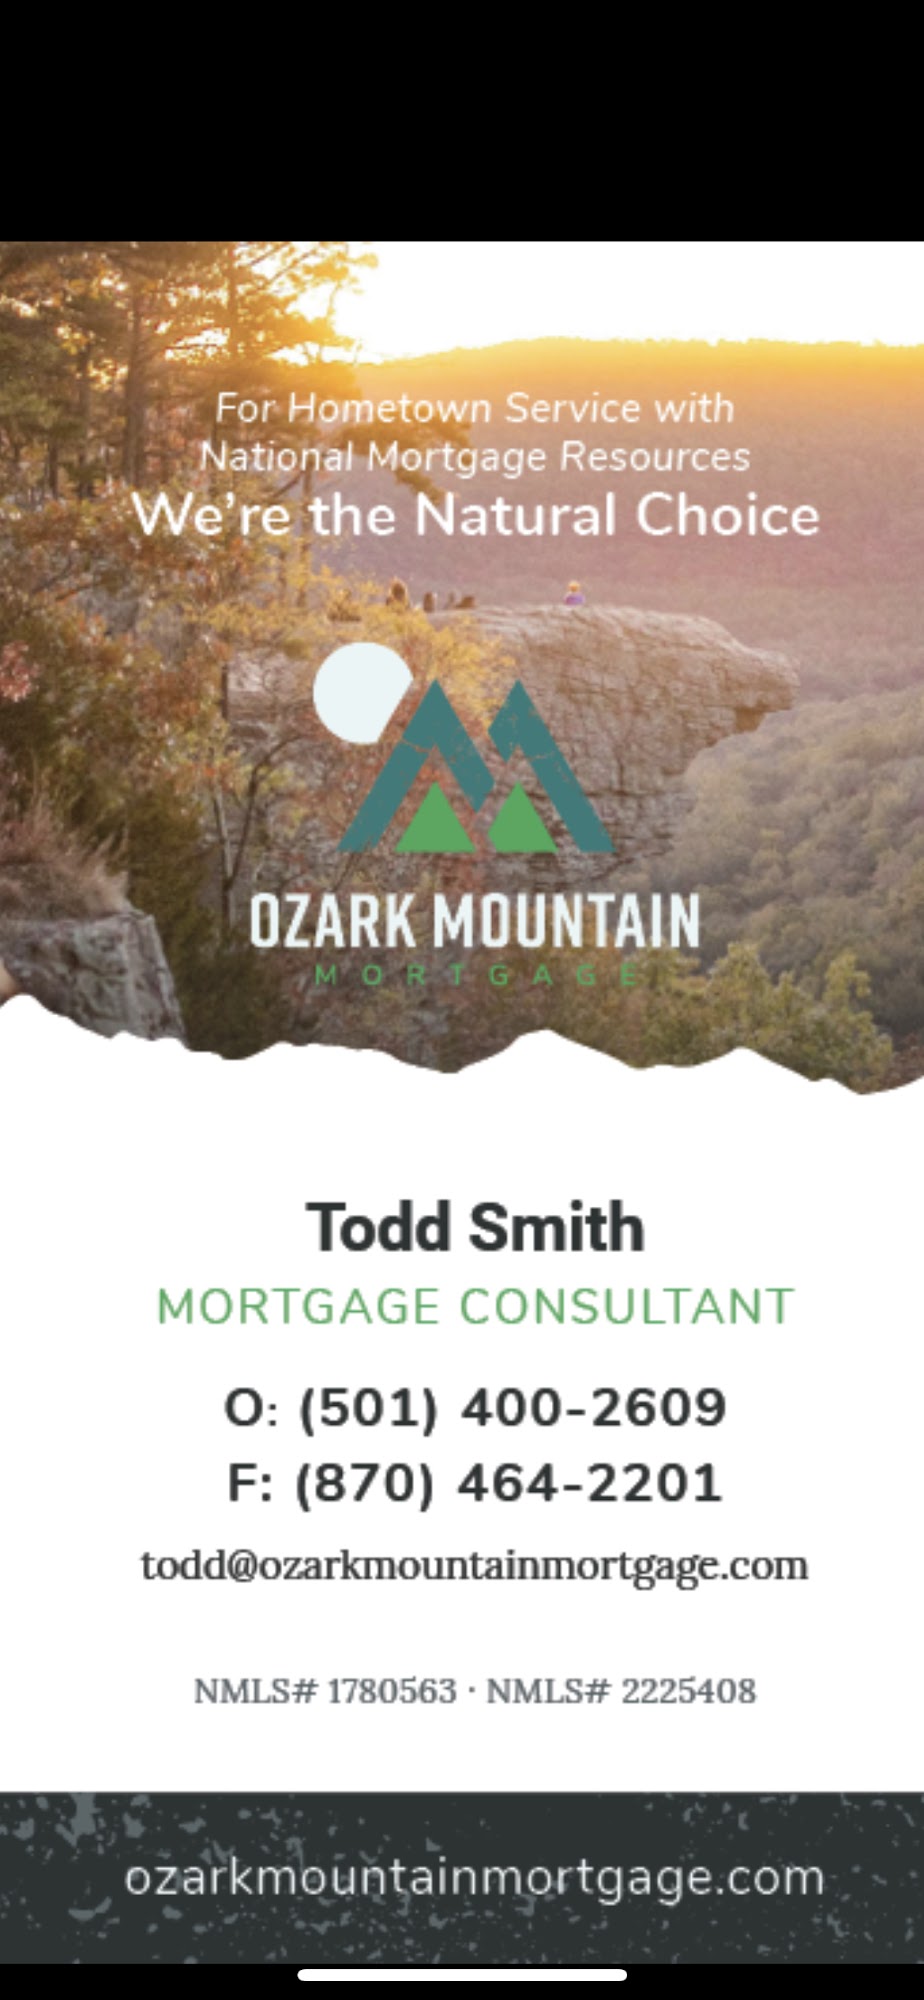 Ozark Mountain Mortgage 206 E Main St, Mountain View Arkansas 72560